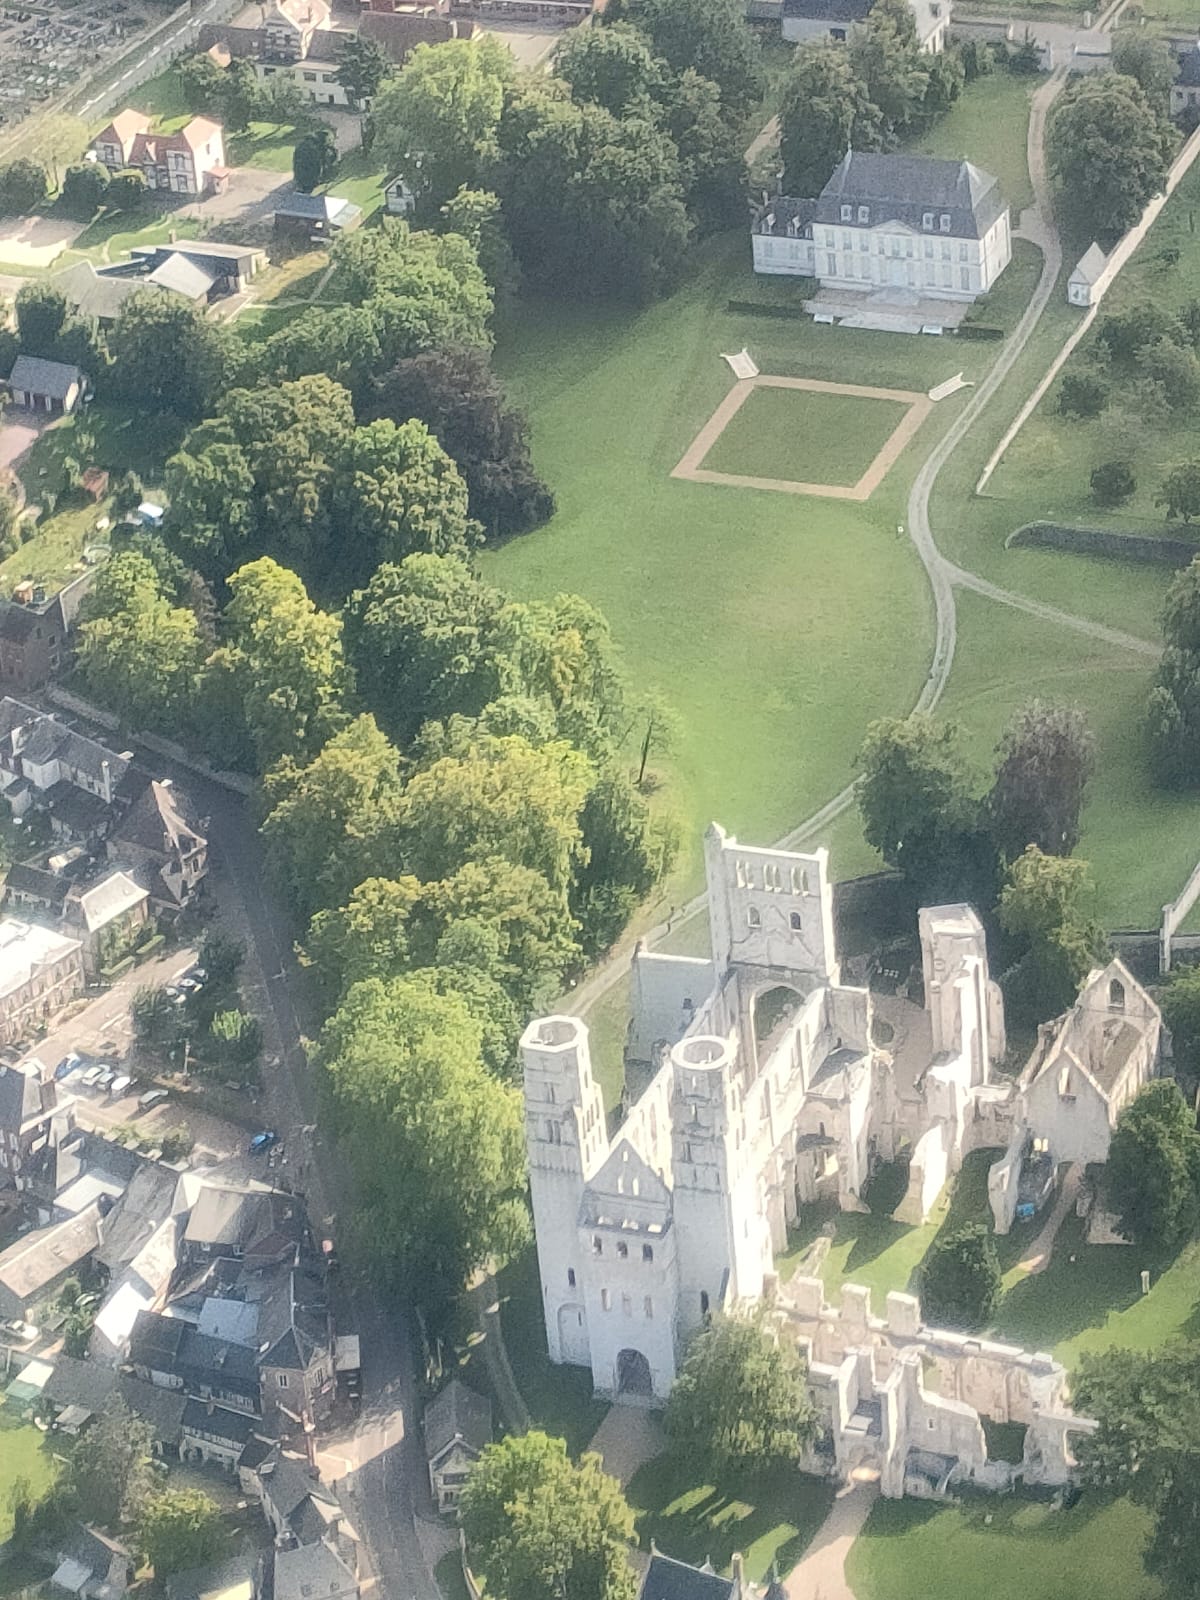 L'abbaye de Jumièges vue du ciel, comme posée au milieu d'une maquette. Les tours d'architecture romane, s'élèvent au milieu des arbres, tandis que le reste du paysage est ville d'un côté, étendues gazonnées de l'autre.